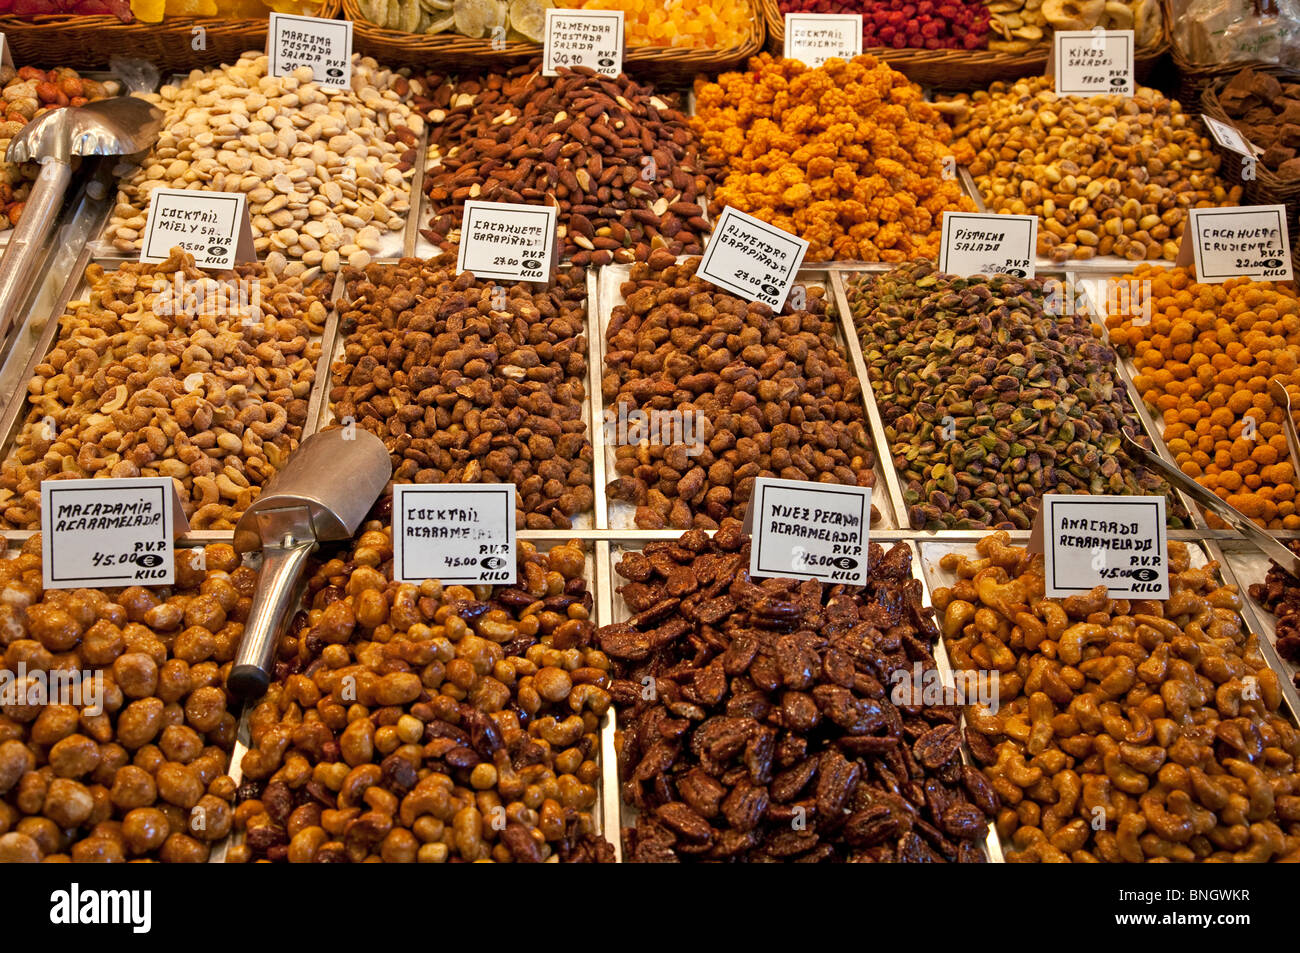 Candied dried fruits. La Boqueria Market. Barcelona. Spain Stock Photo